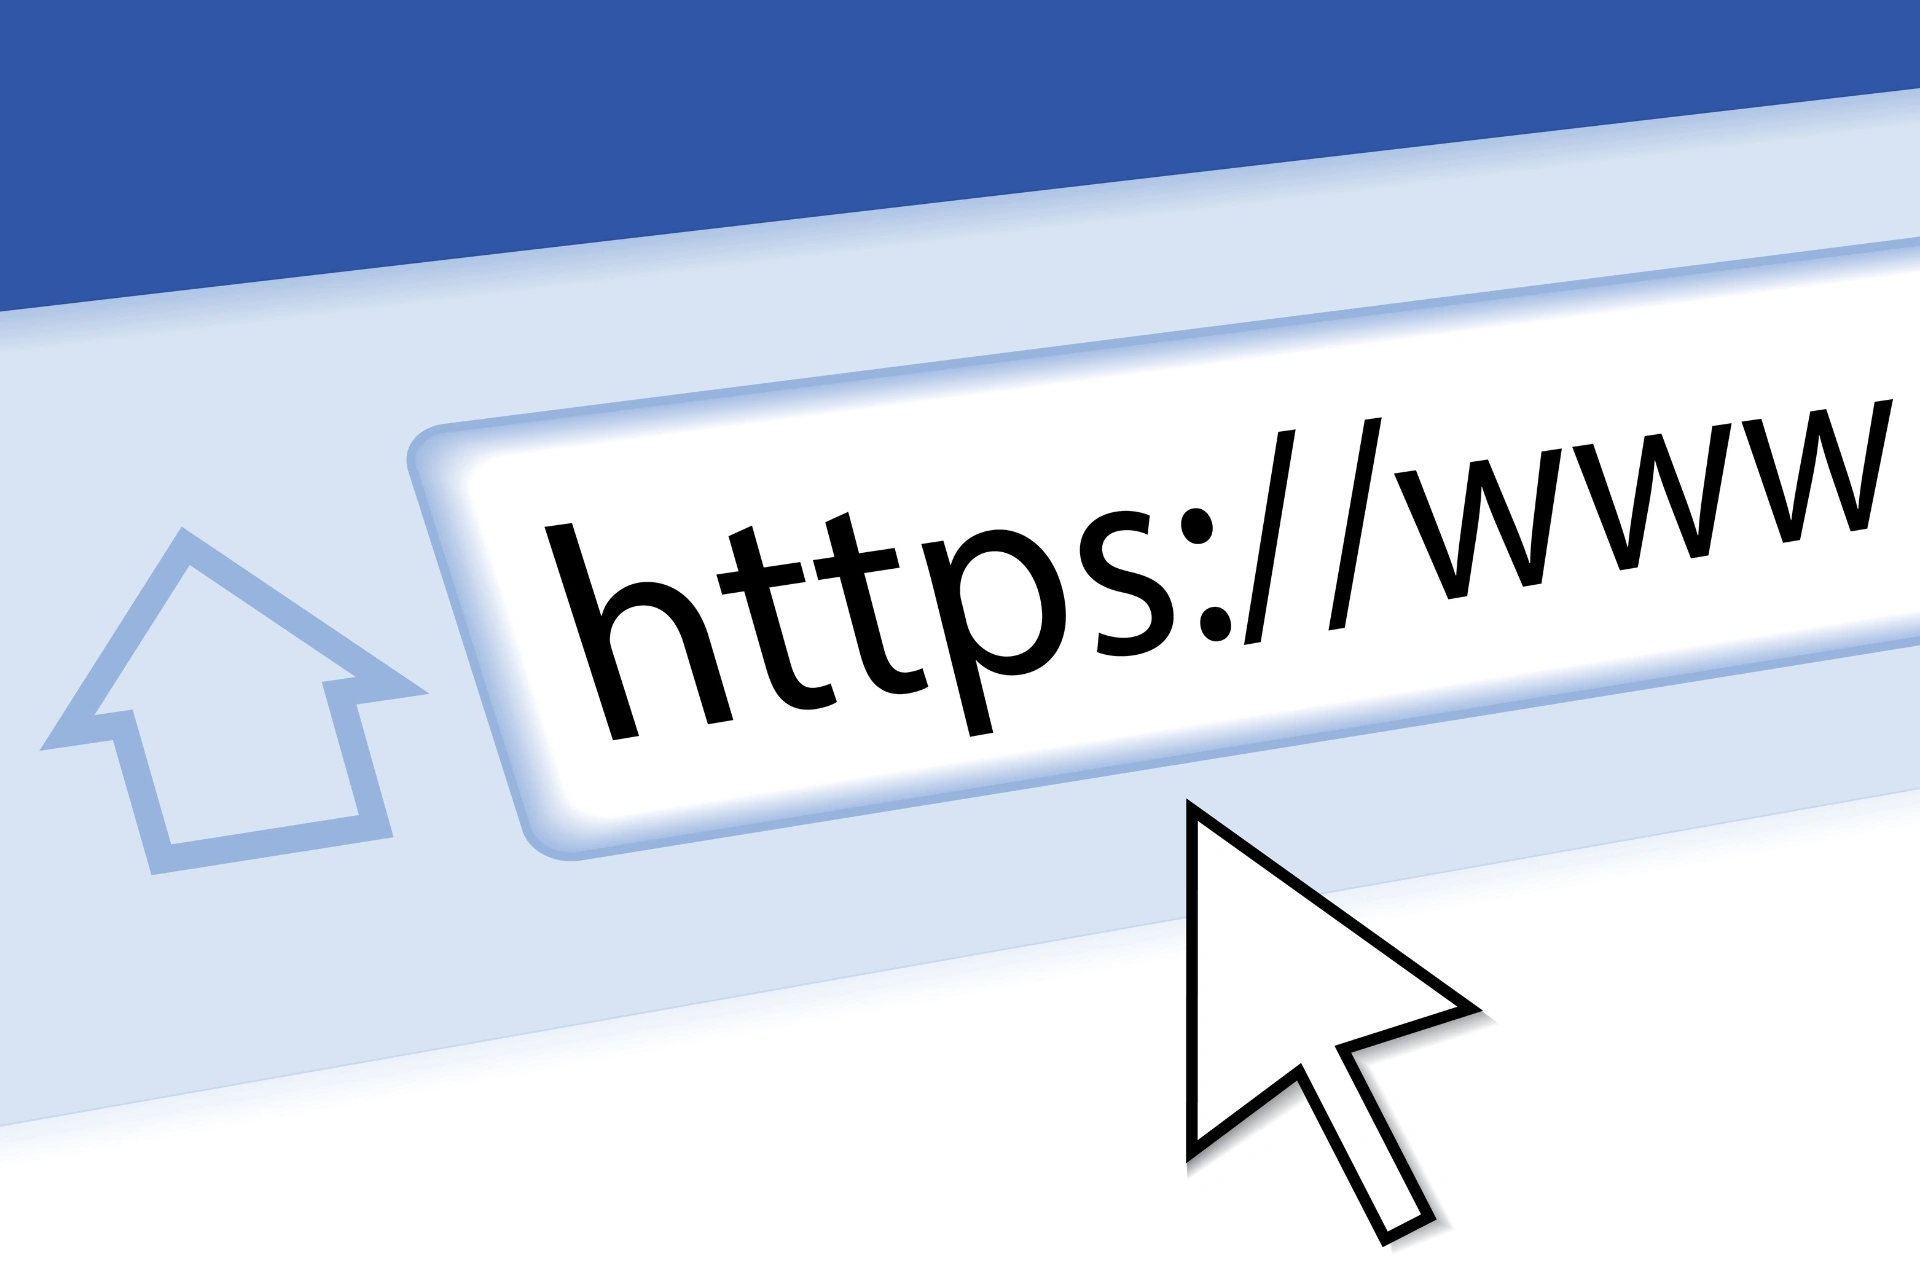 Τι είναι τα “www” μπροστά από το domain name και γιατί δεν τα χρησιμοποιούμε πια;